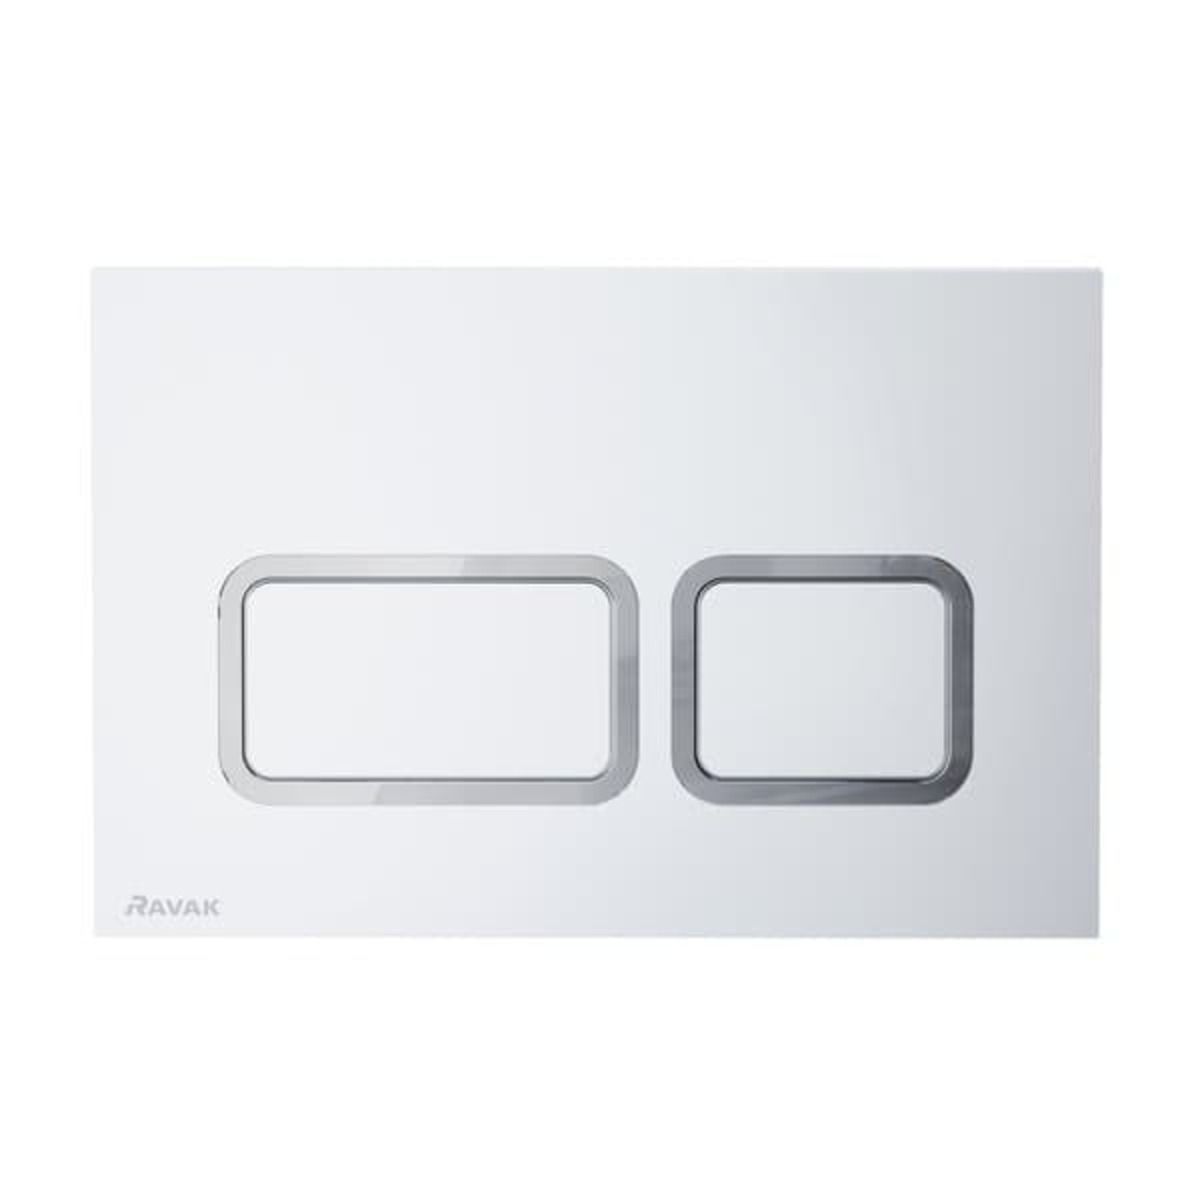 Ovládací tlačítko Ravak Twin kov Satin X01739 - Siko - koupelny - kuchyně